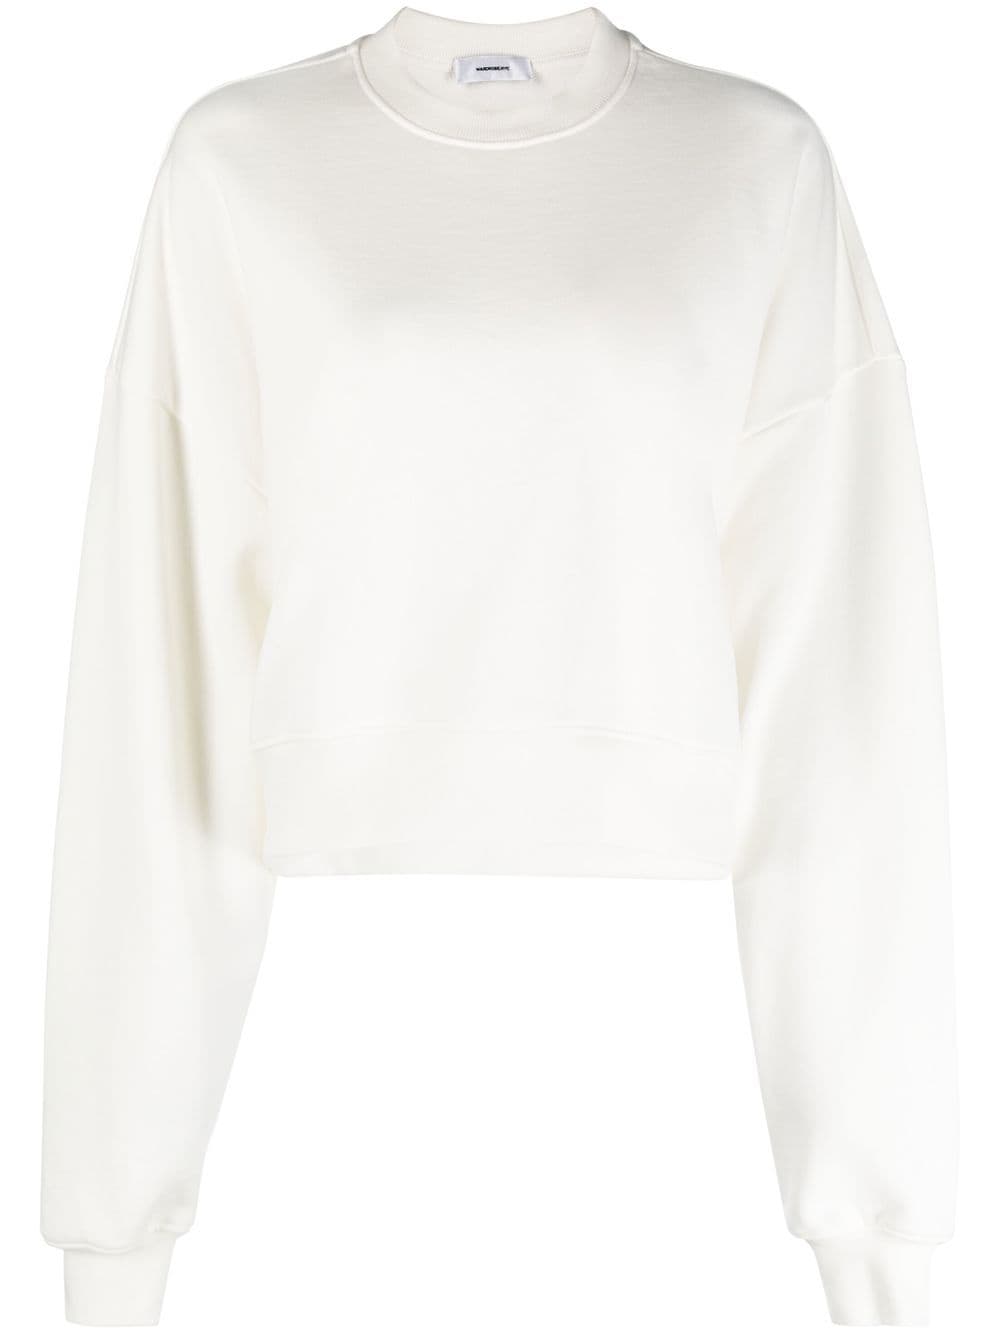 WARDROBE.NYC crew-neck pullover sweatshirt - White von WARDROBE.NYC